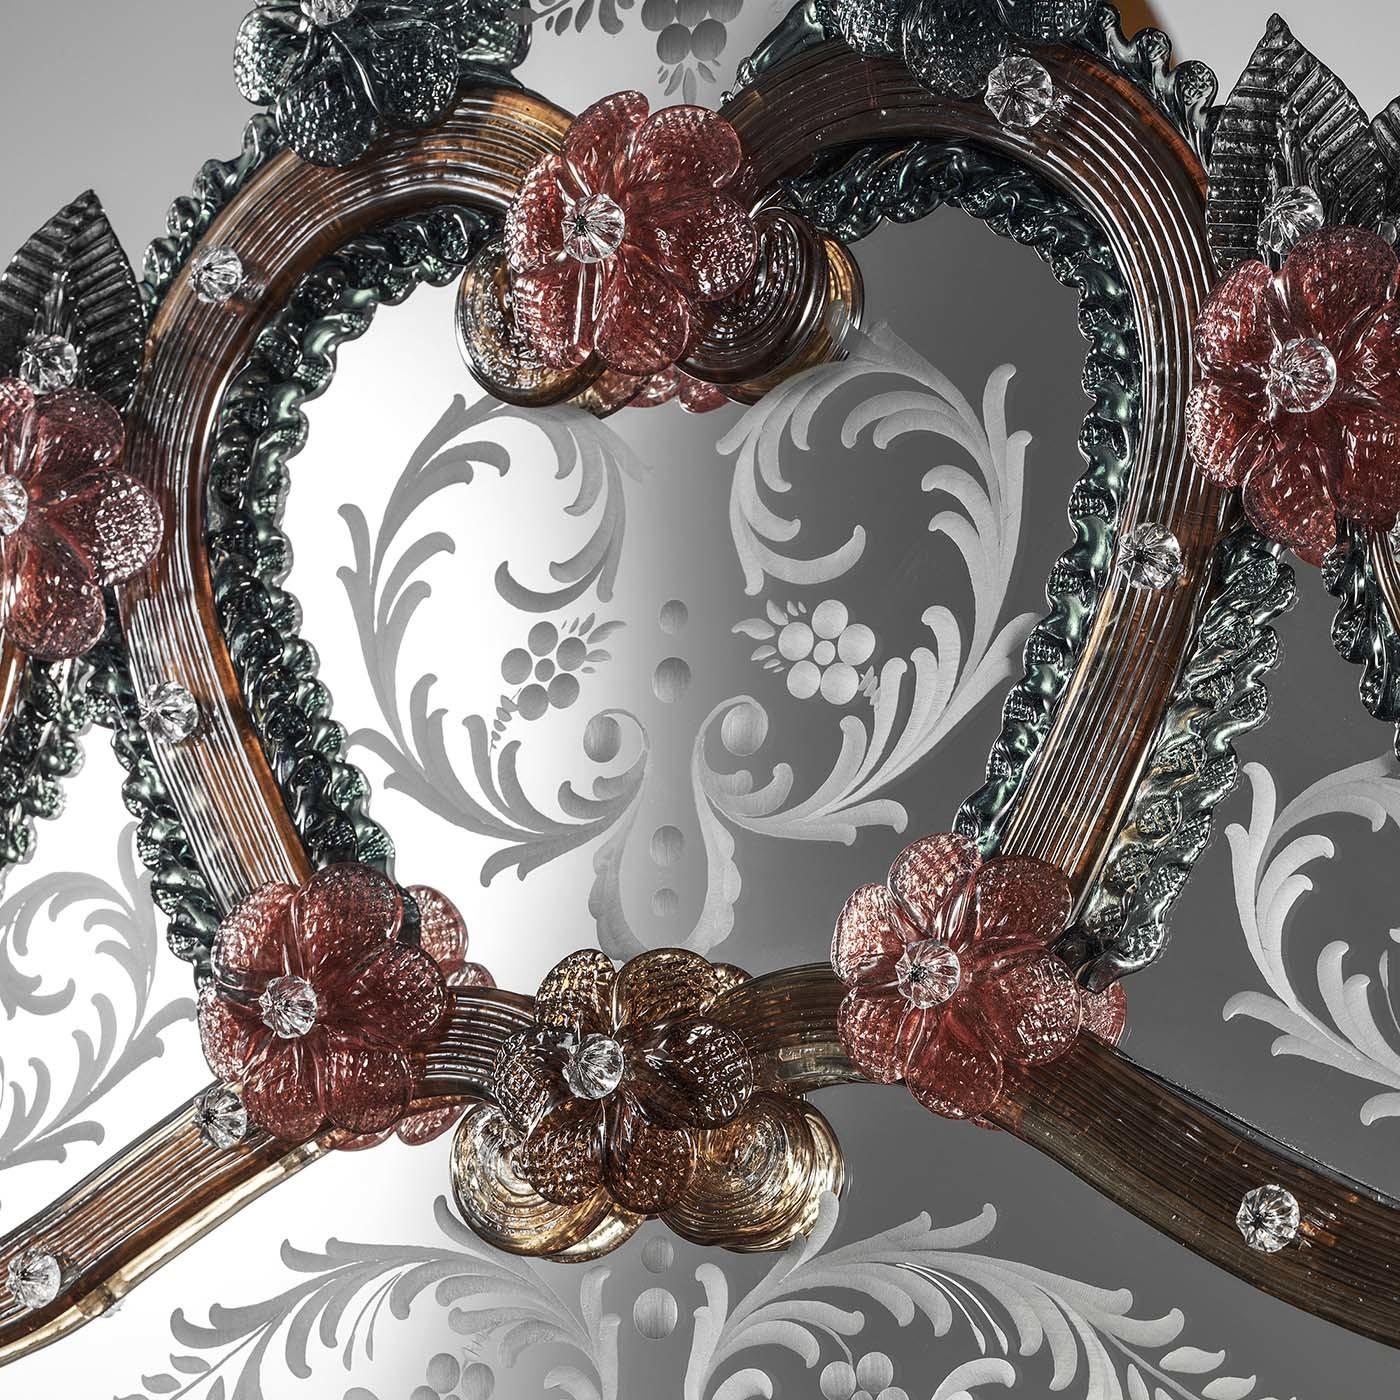 Dieser atemberaubende Spiegel zelebriert die exquisite Handwerkskunst und die Tradition mundgeblasener Muranoglas-Artefakte. Er ist ein Kunstwerk, das über einem Kaminsims, einer Konsole oder in einem Schlafzimmer oder einer Damentoilette für einen